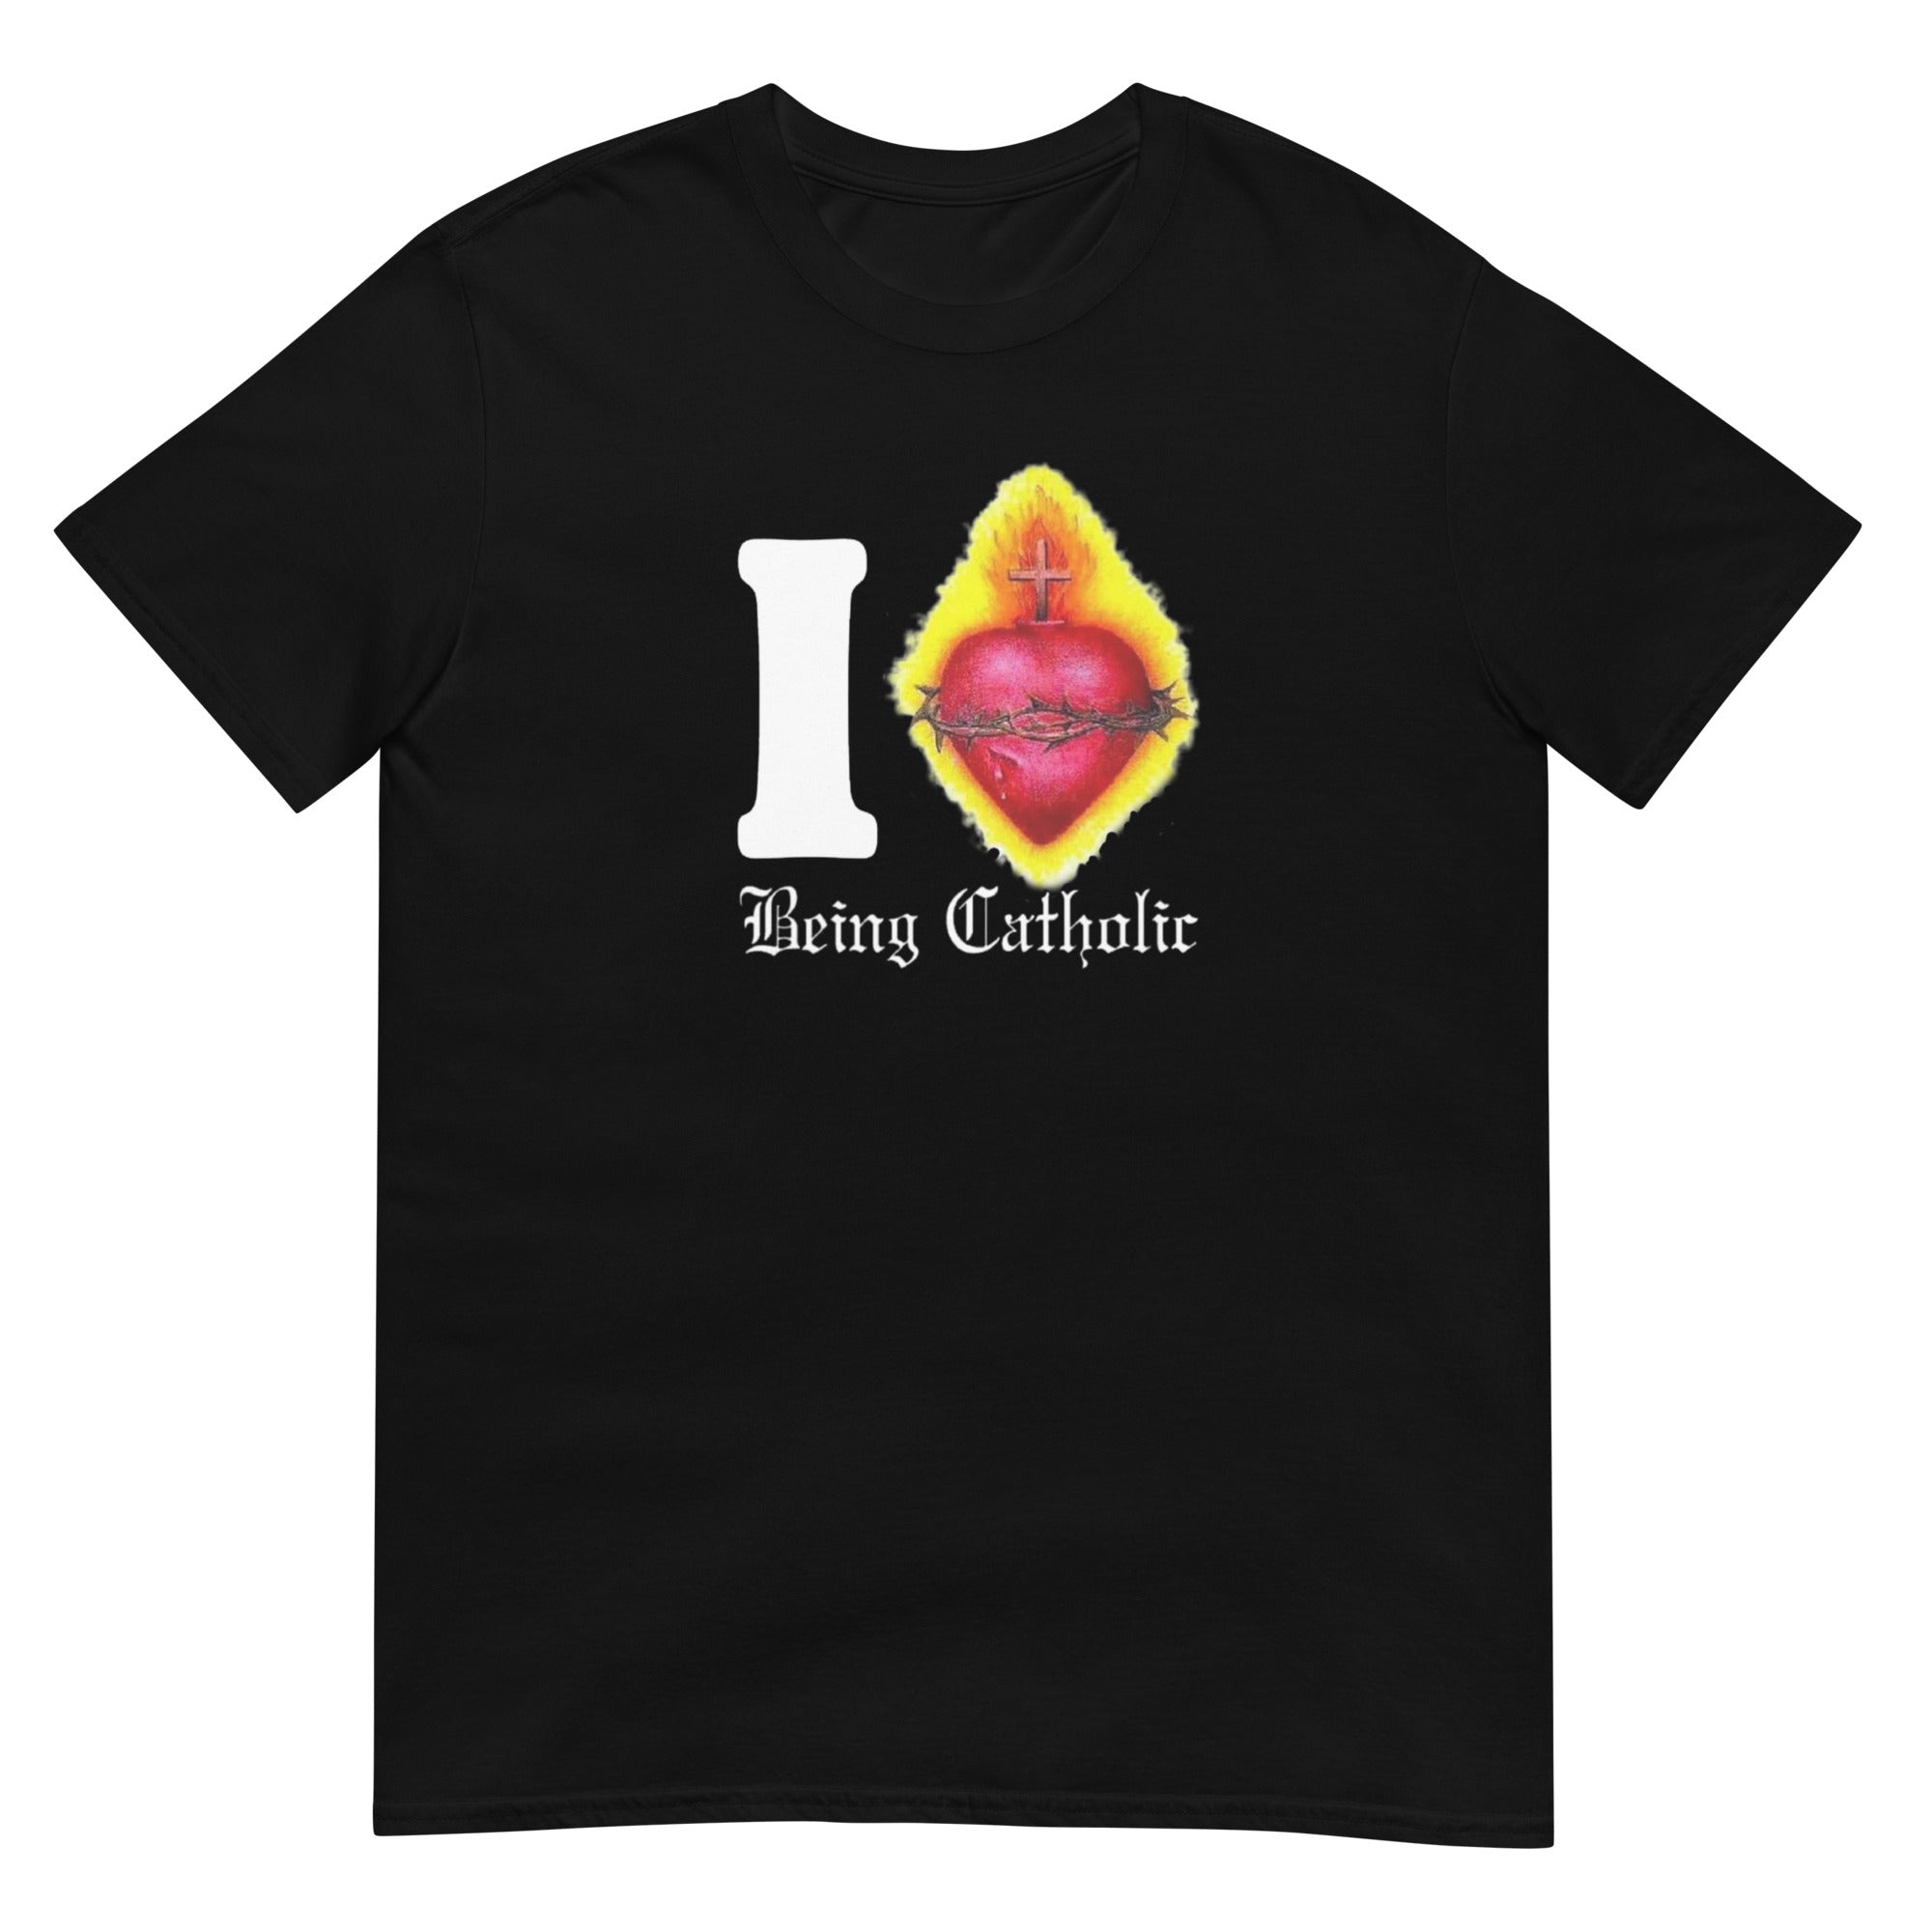 I SACRED HEART BEING CATHOLIC